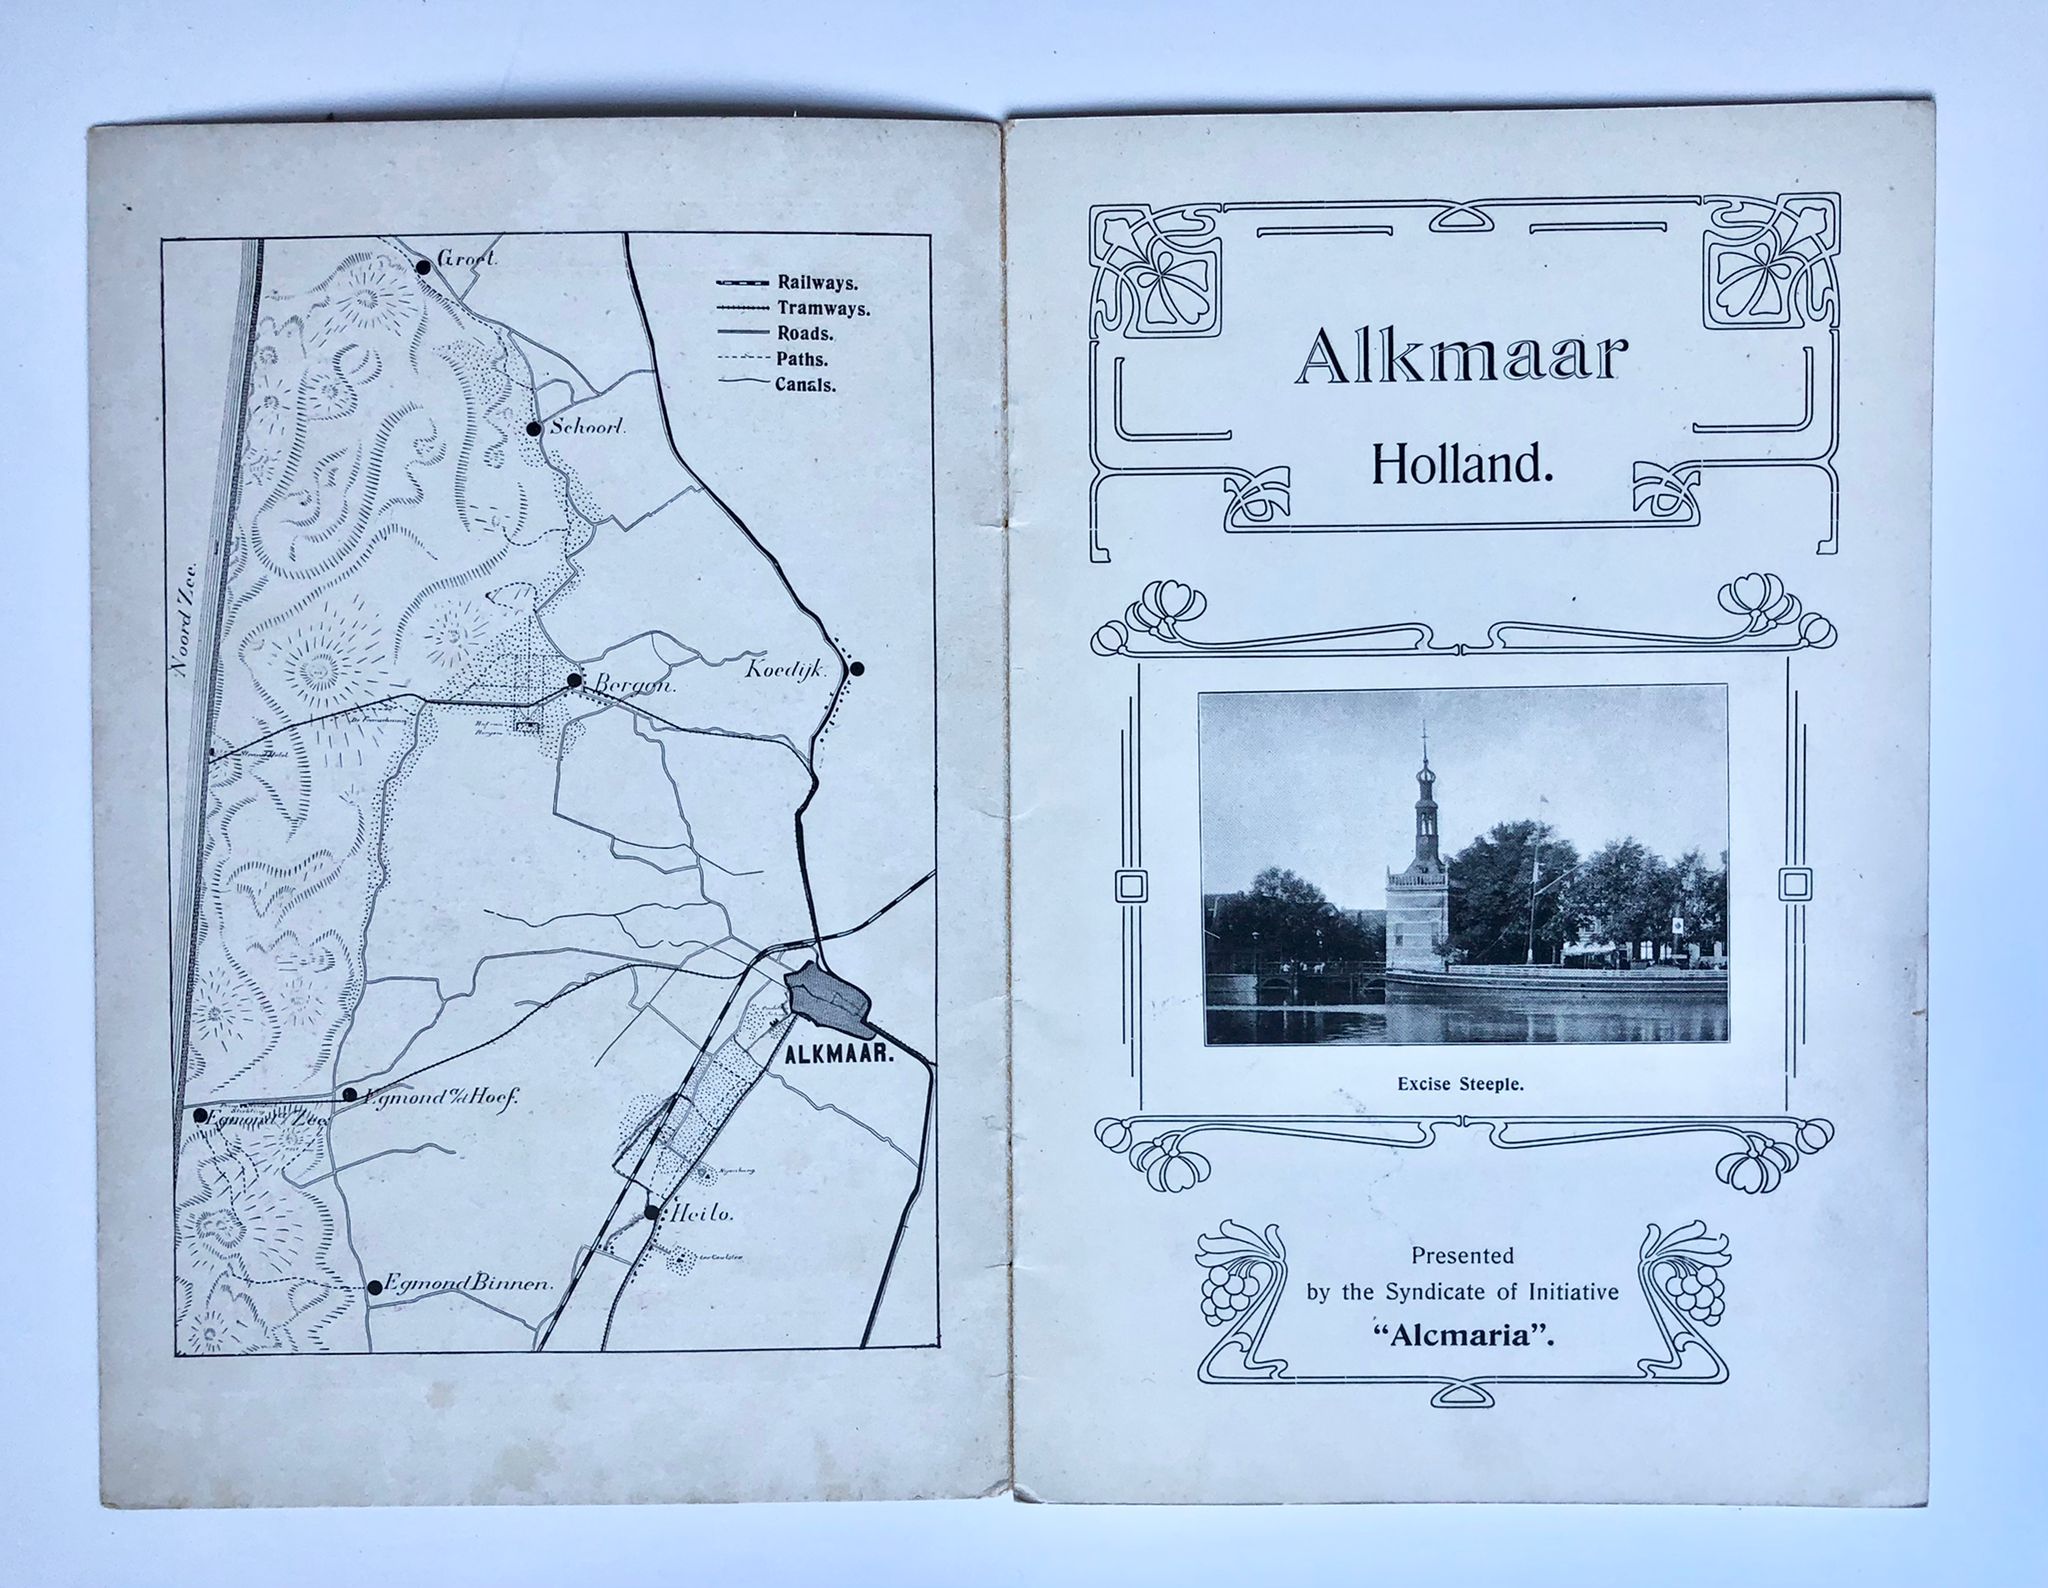 [English antique tourist book Alkmaar, [1915]] Alkmaar-Holland, Presented by the Syndicate of Initiative “Alcmaria”, Printed by Firma P. Kluitman, Alkmaar [1915], 8 pp.